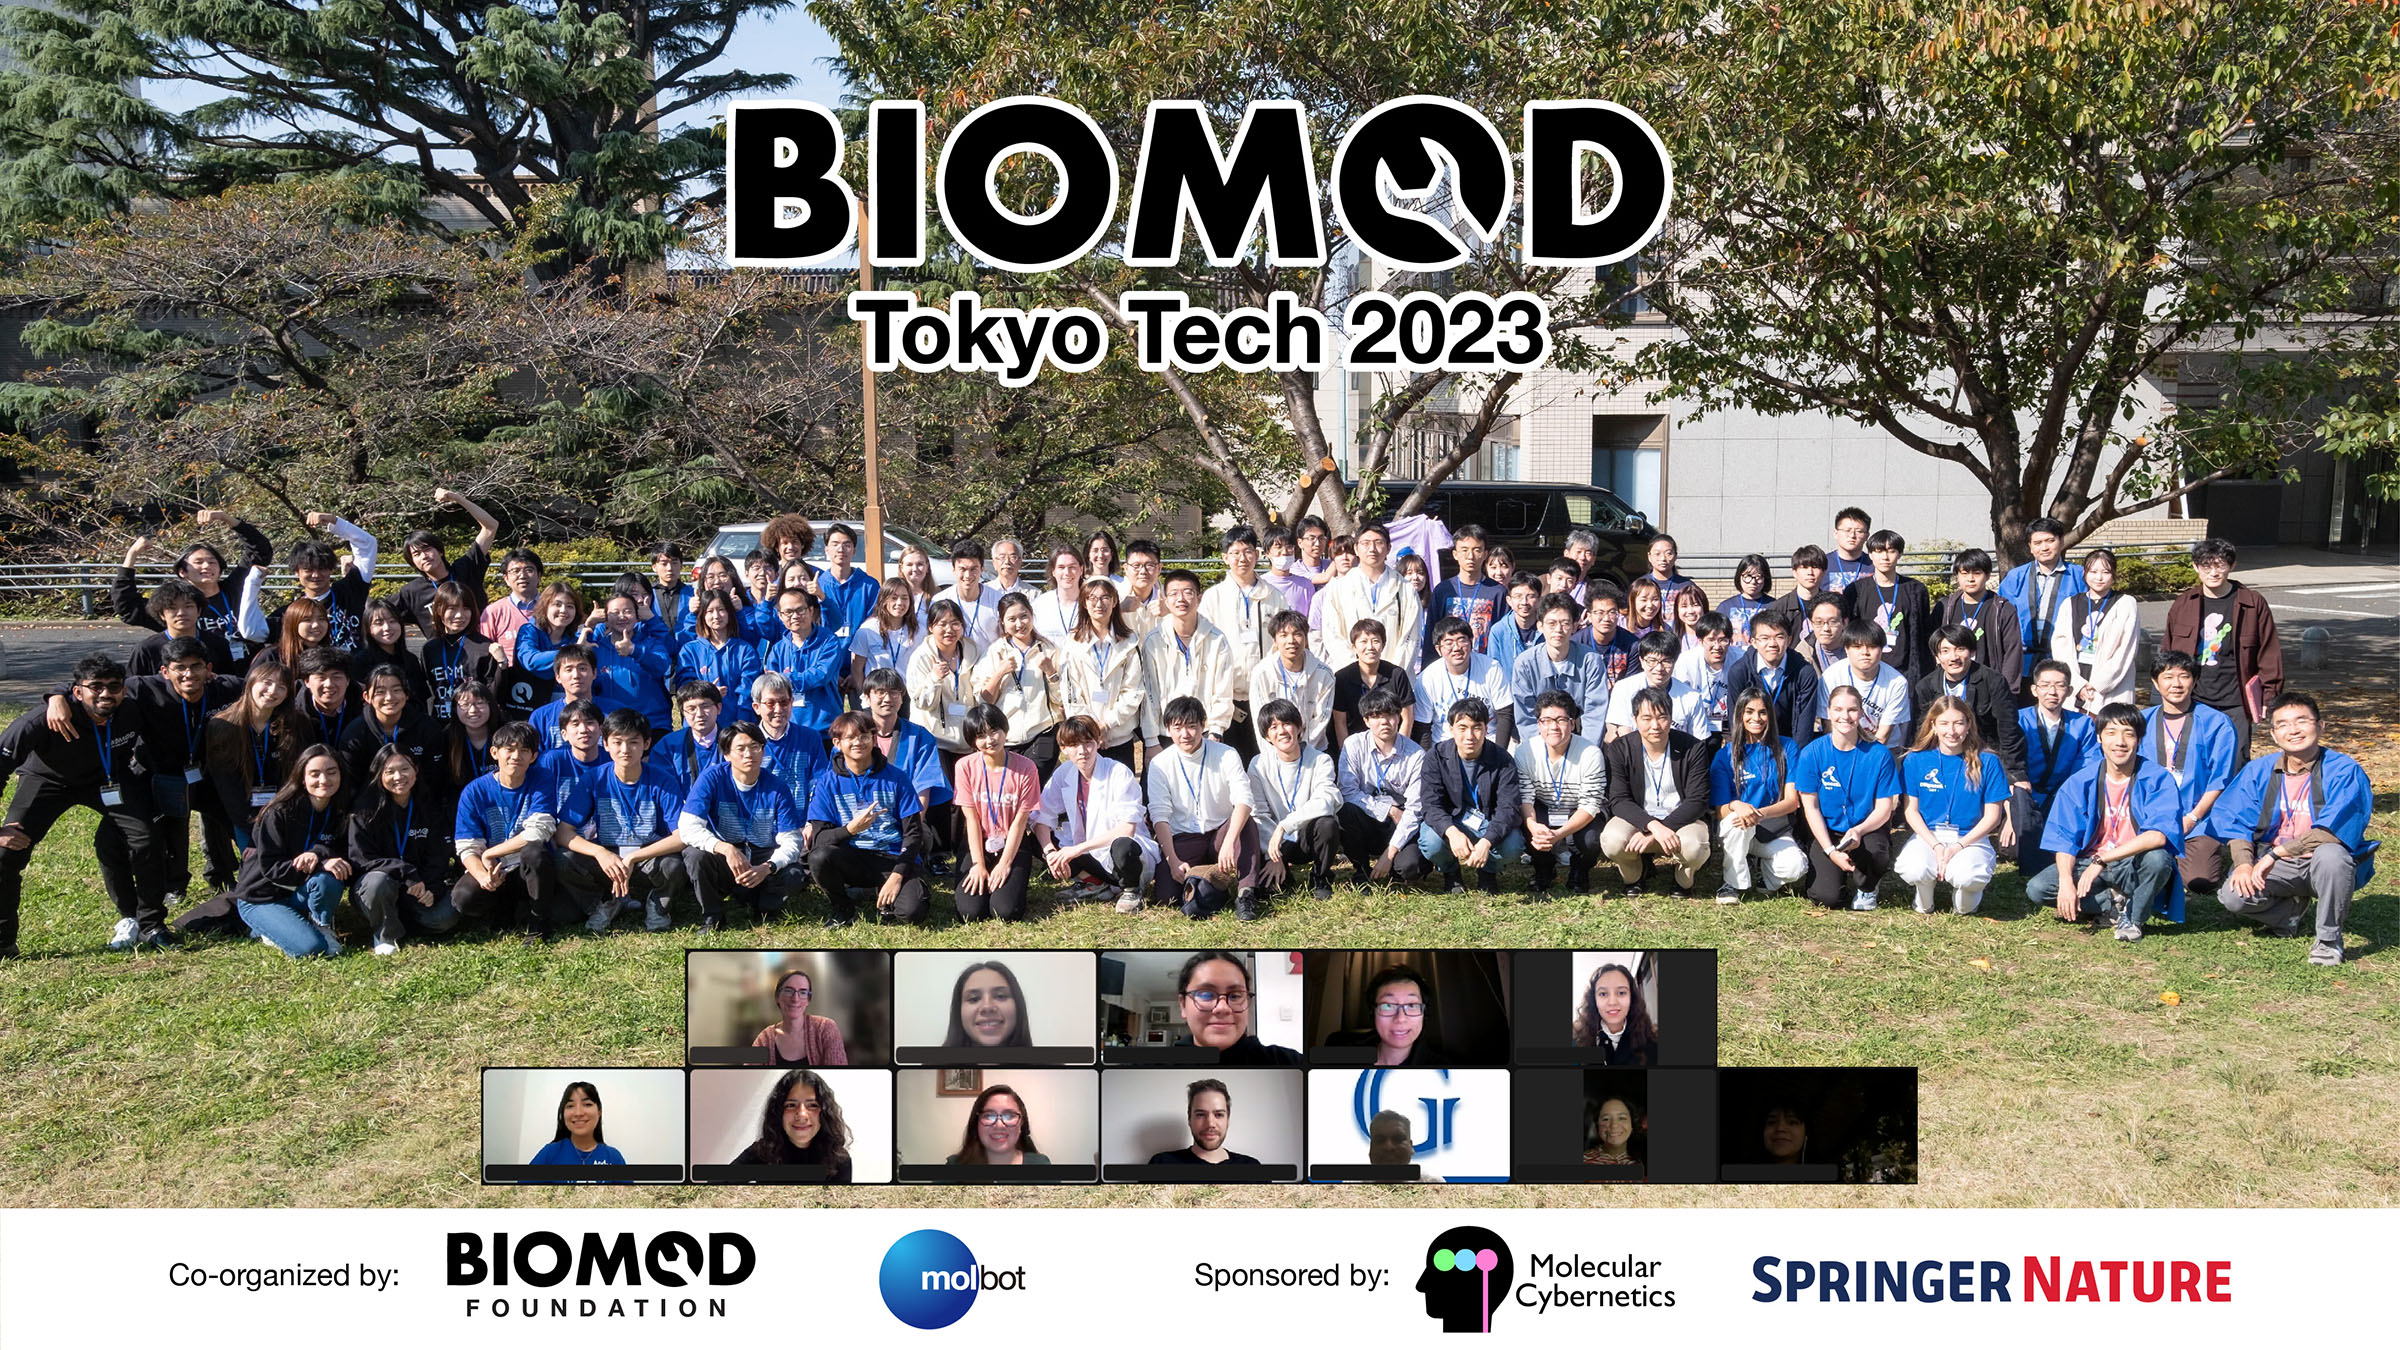 BIOMOD 2023 ジャンボリーと東工大チームについての記事が東工大ニュースに掲載されました